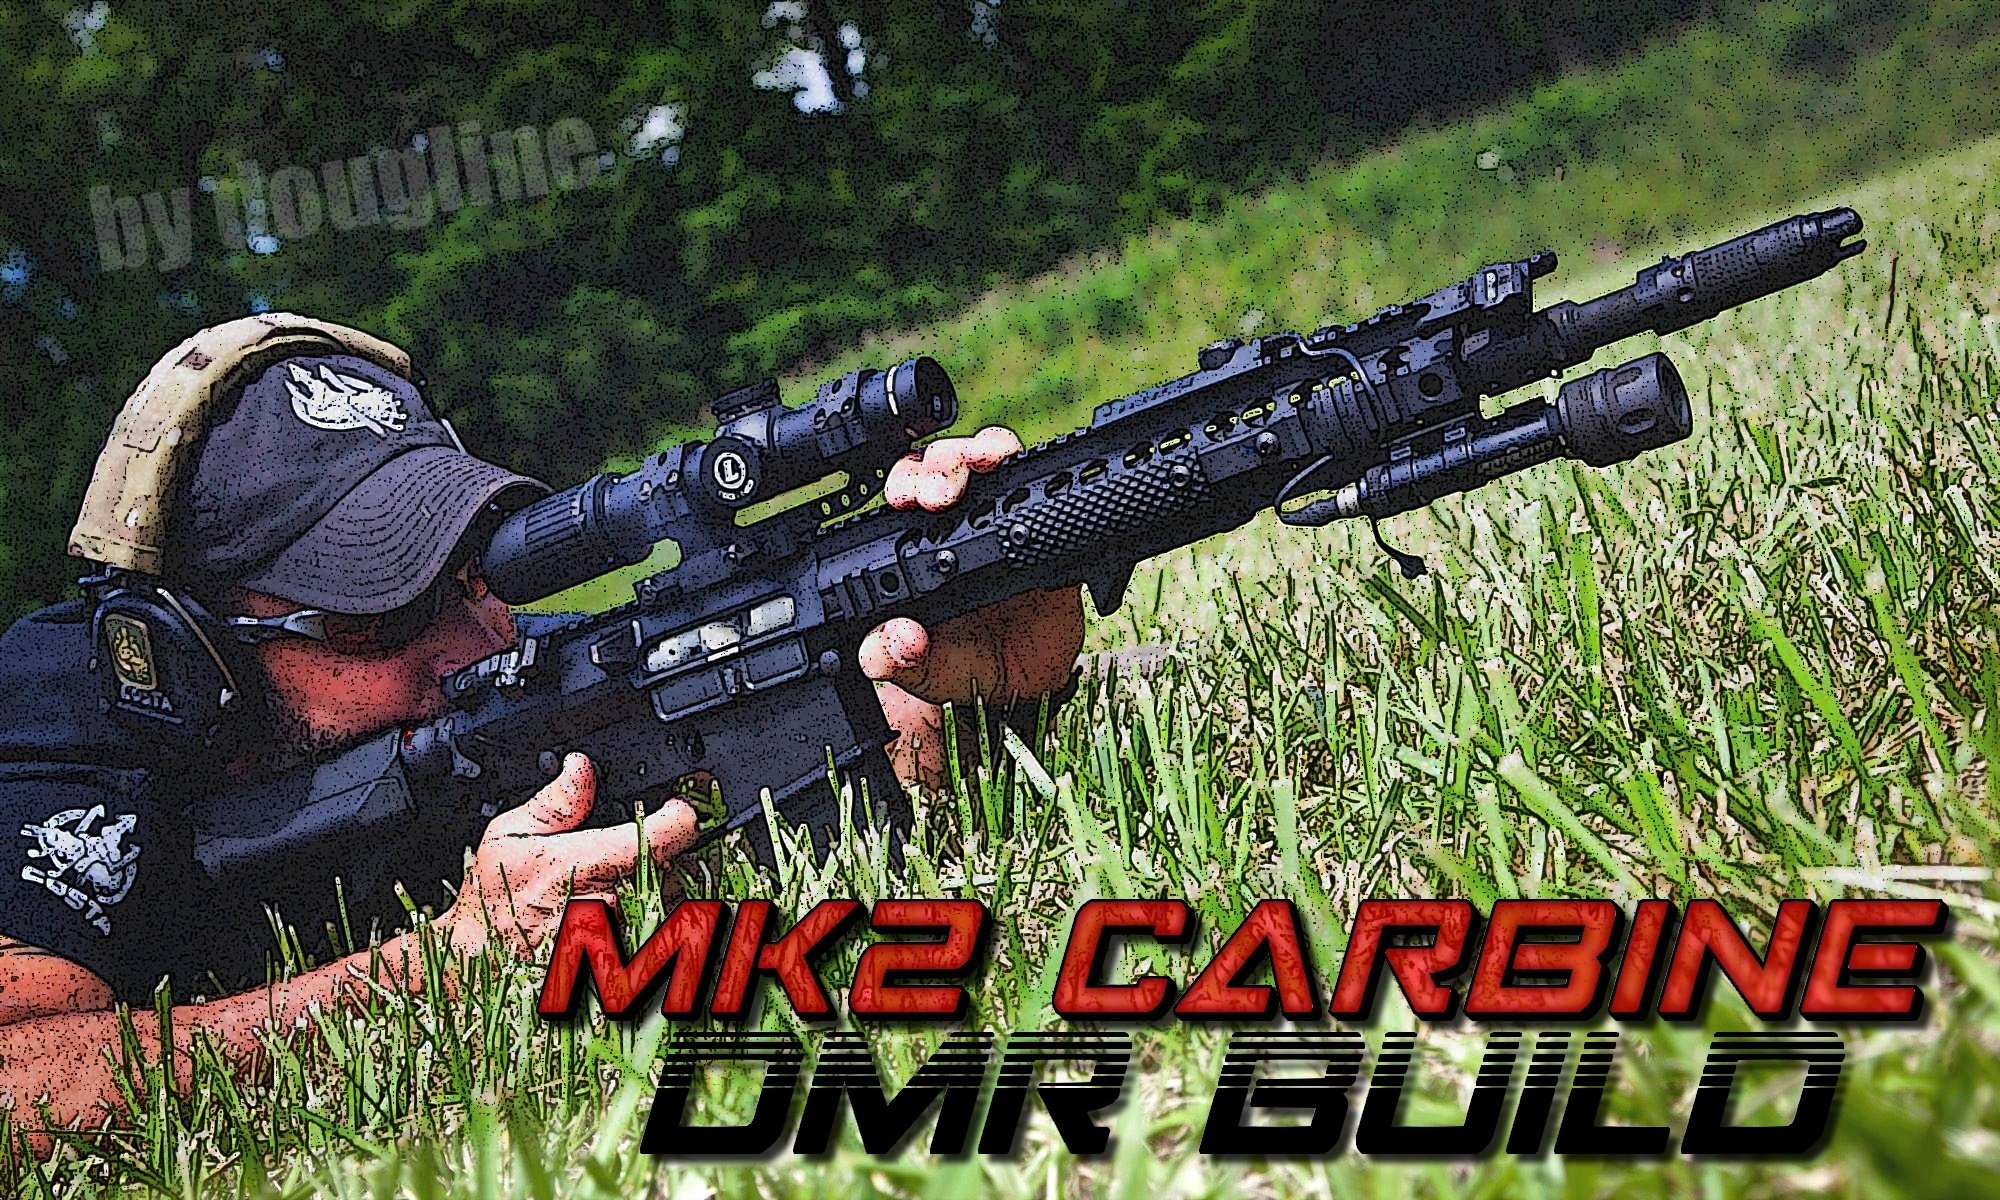 MK2 Carbine DMR Build 1.0